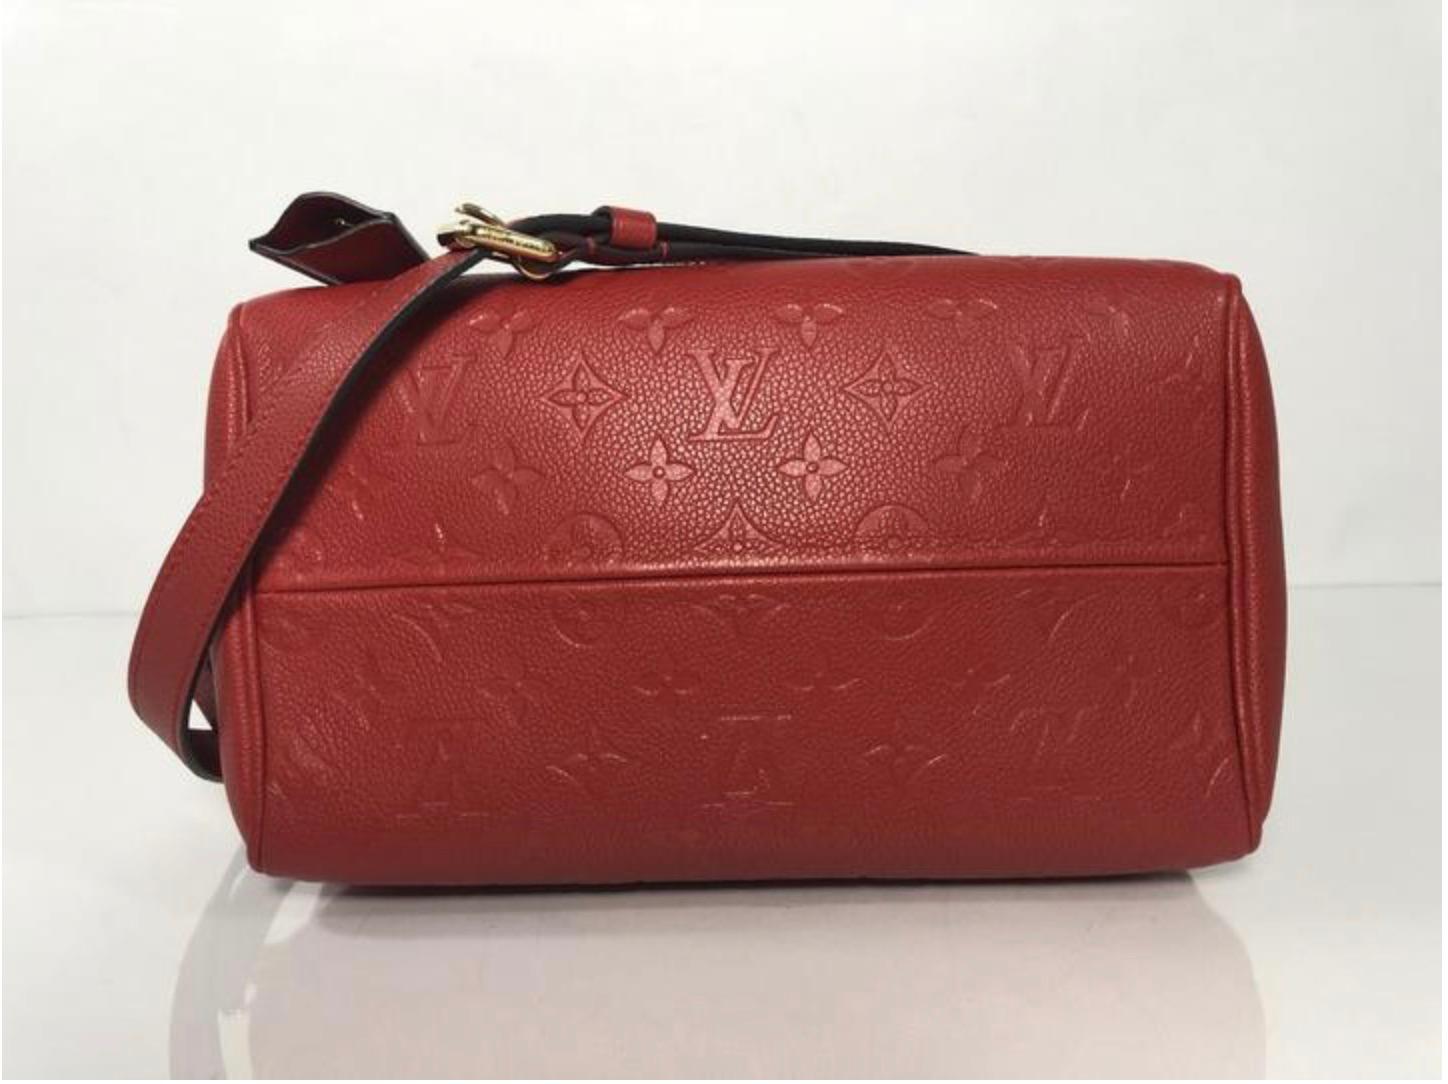 Louis Vuitton Empreinte Speedy 25 in Red Satchel Handbag For Sale 2